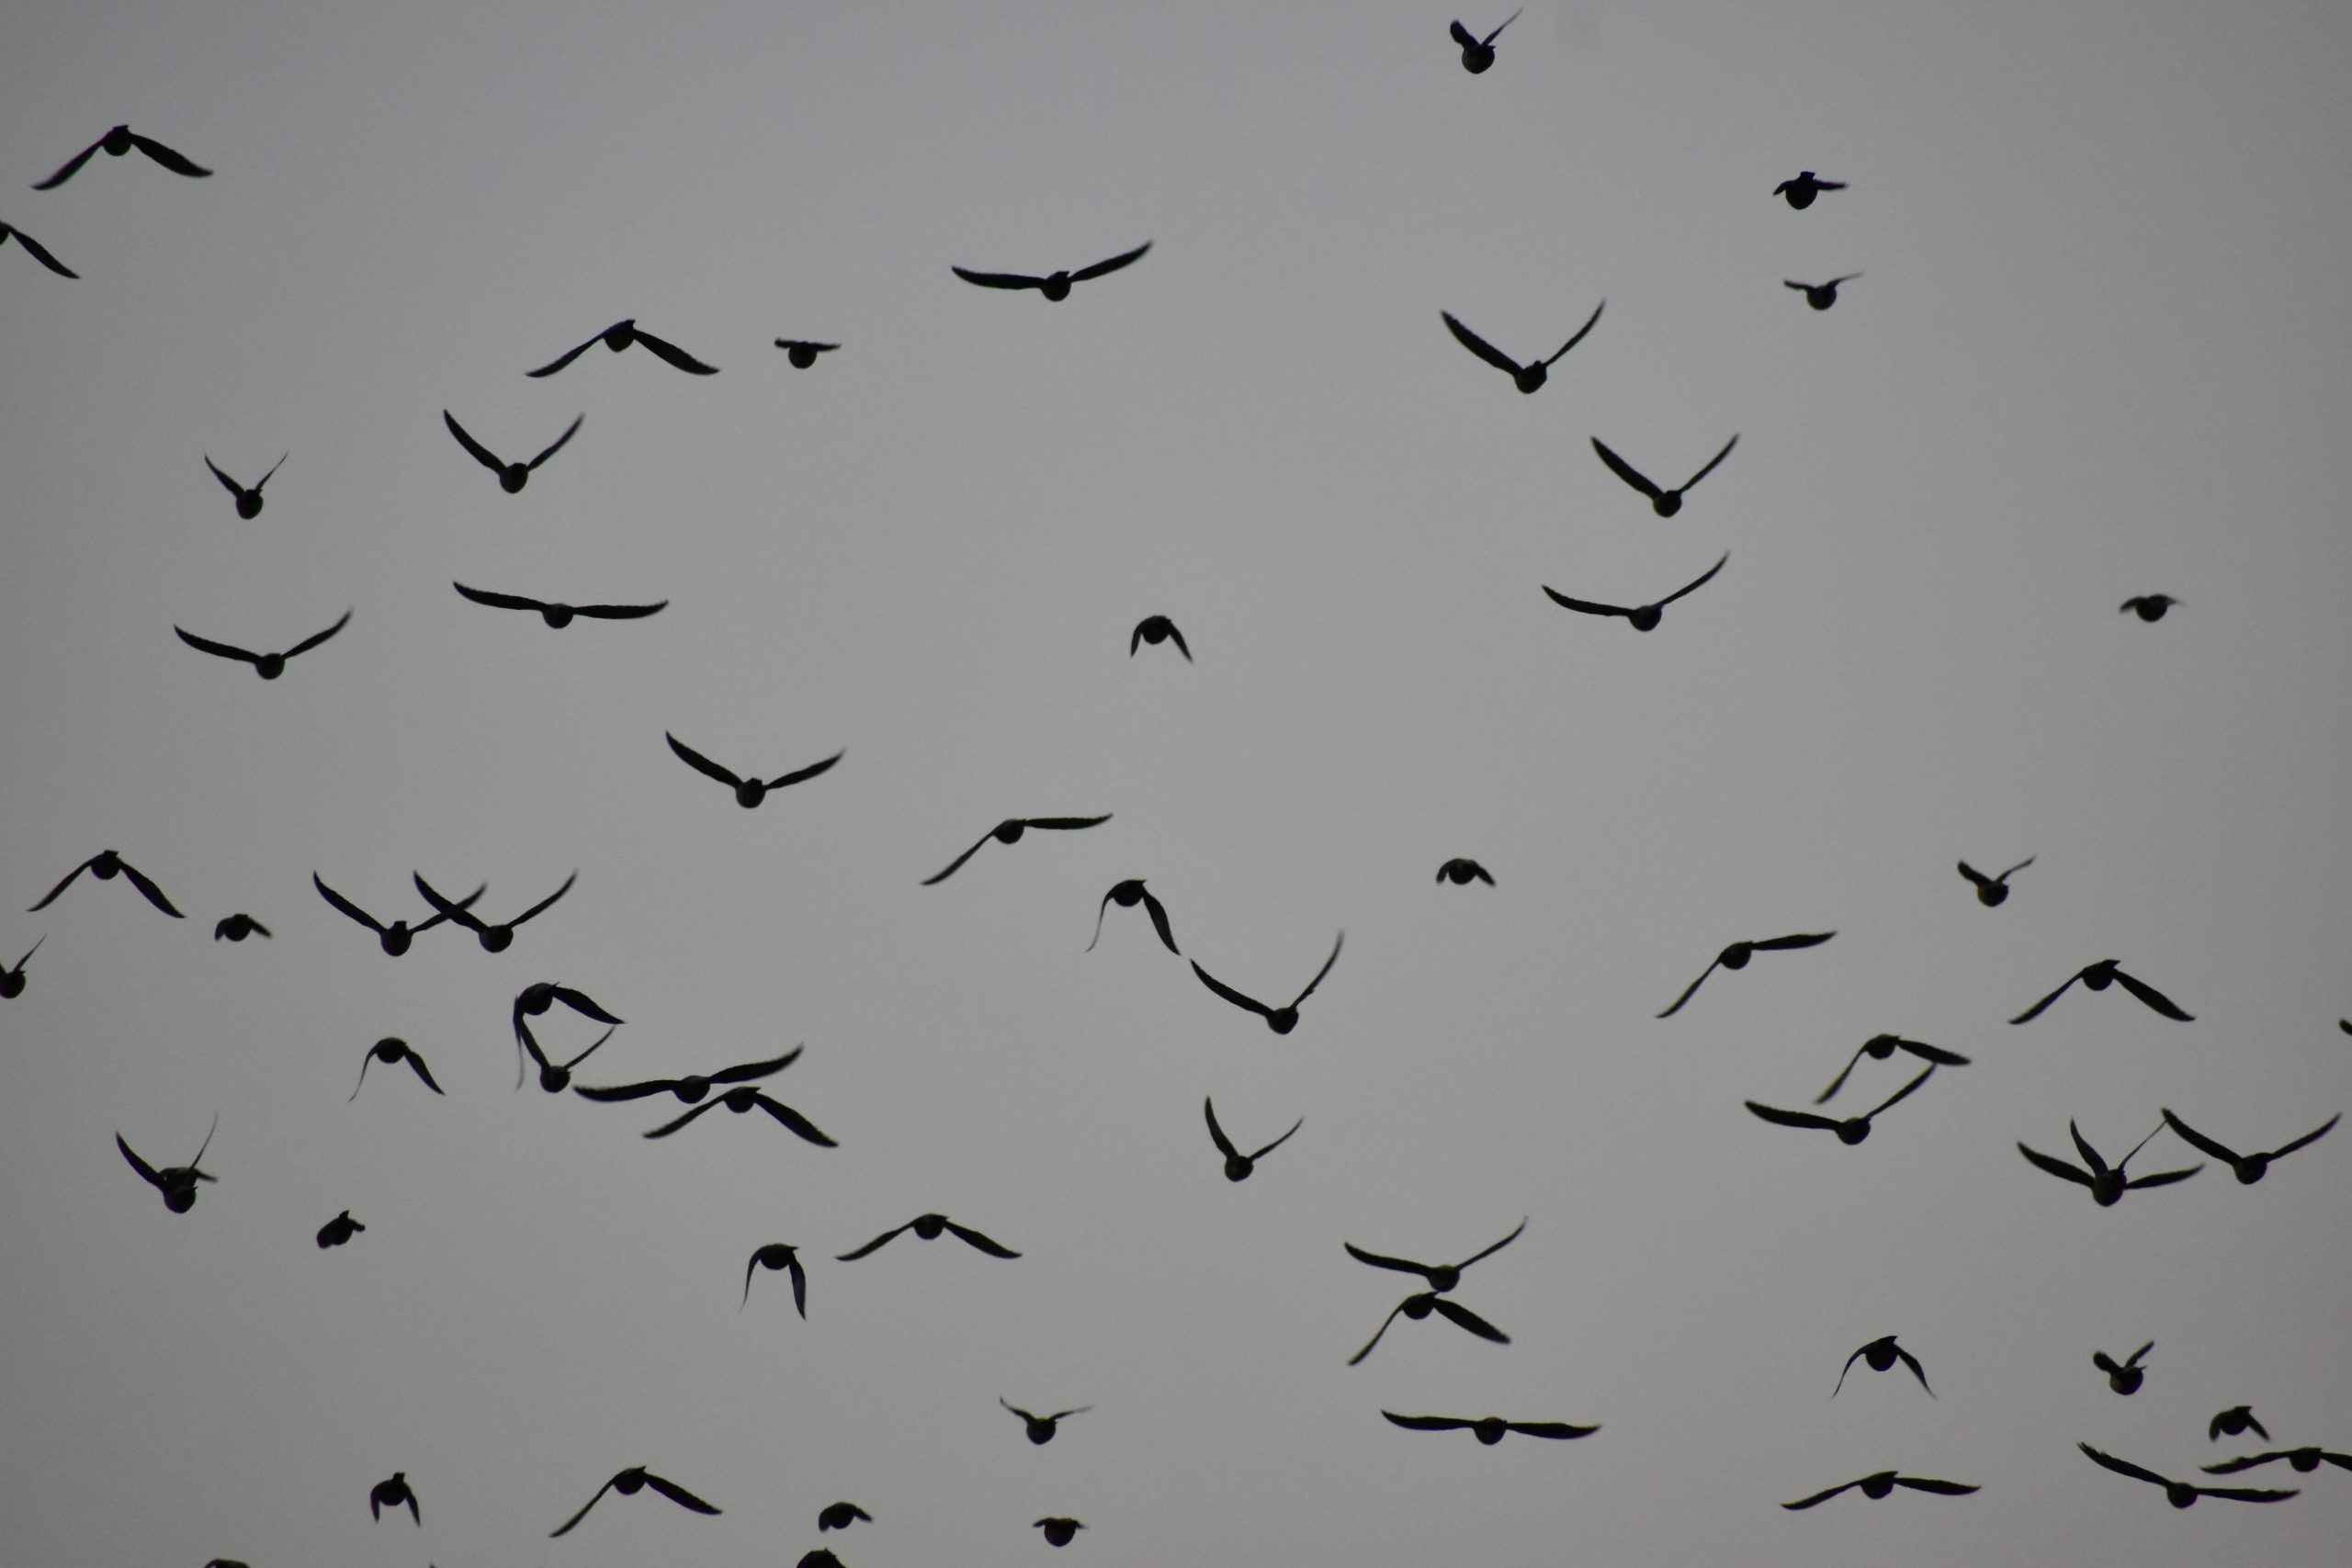 Birds in sky